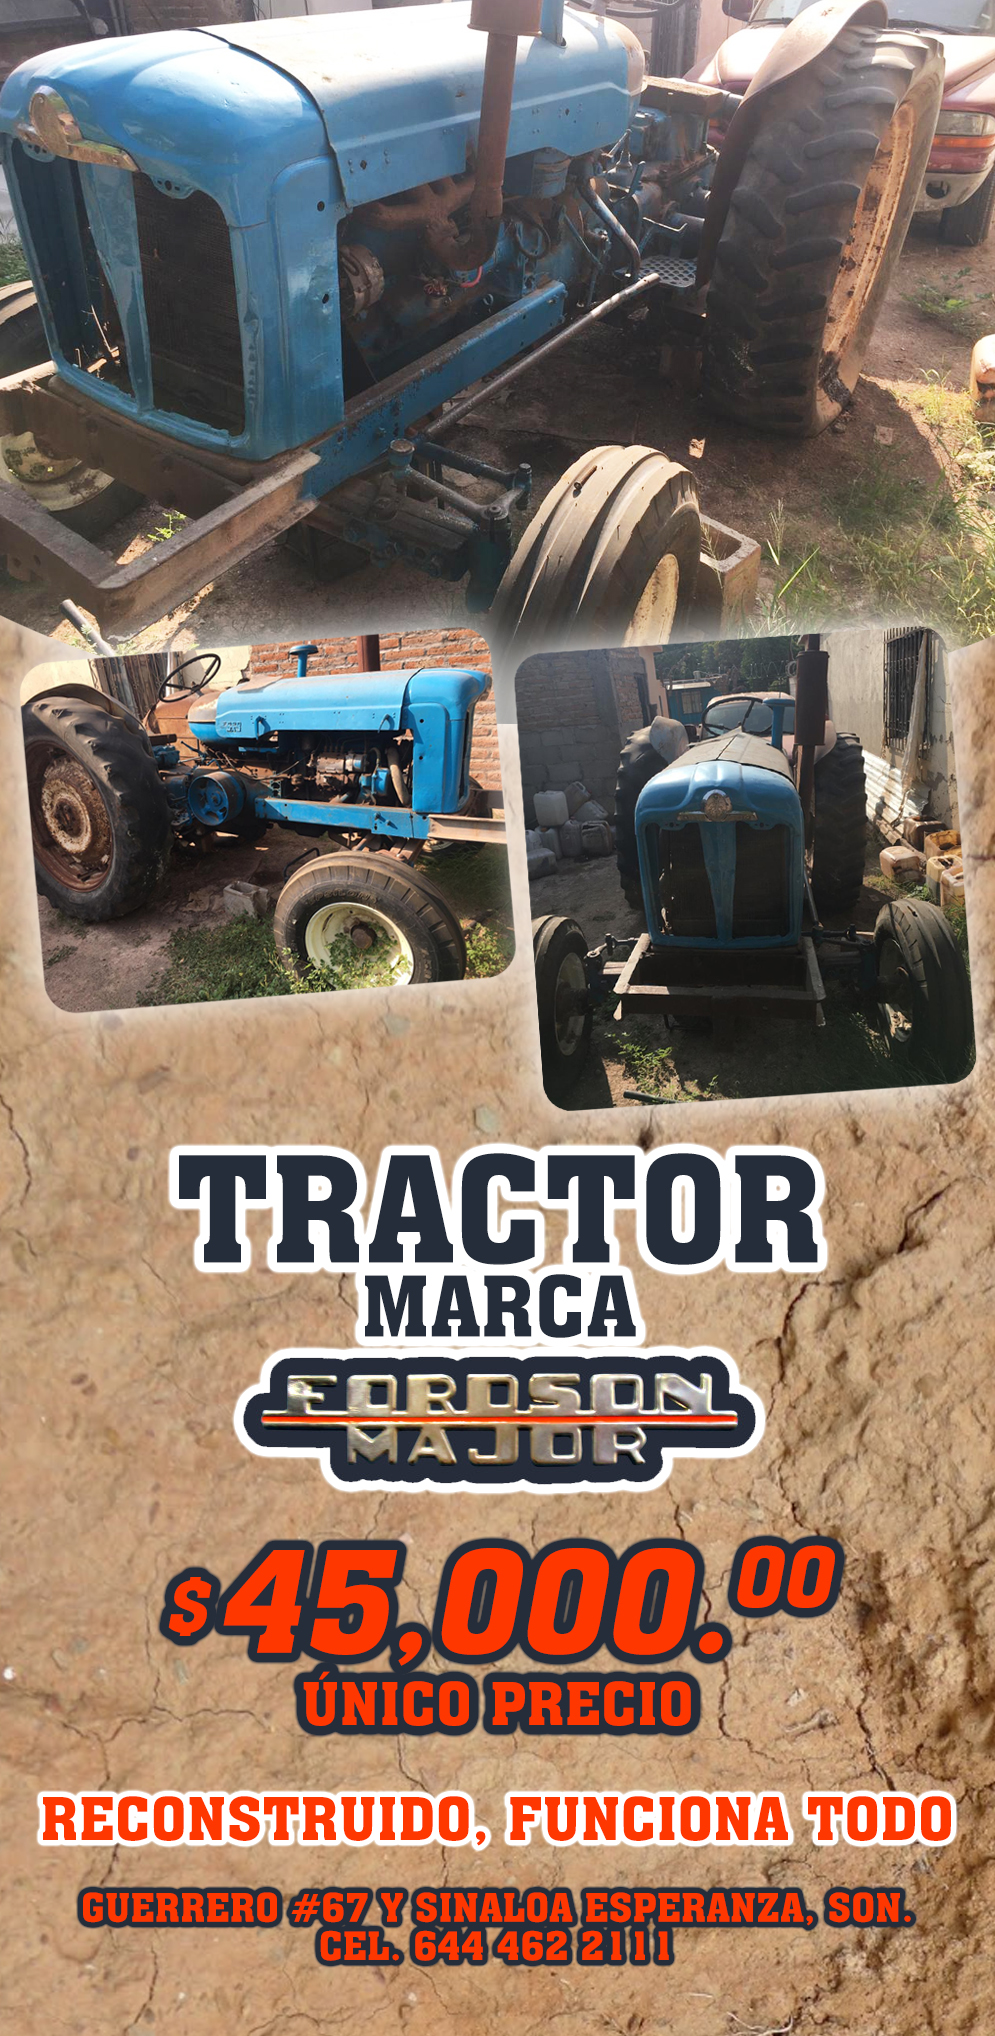 Venta de Tractor marca FORDSON MAJOR-Venta de tractor marca FORDSON MAJOR, reconstruido, le funciona todo, precio $45,000.00 Pesos.     